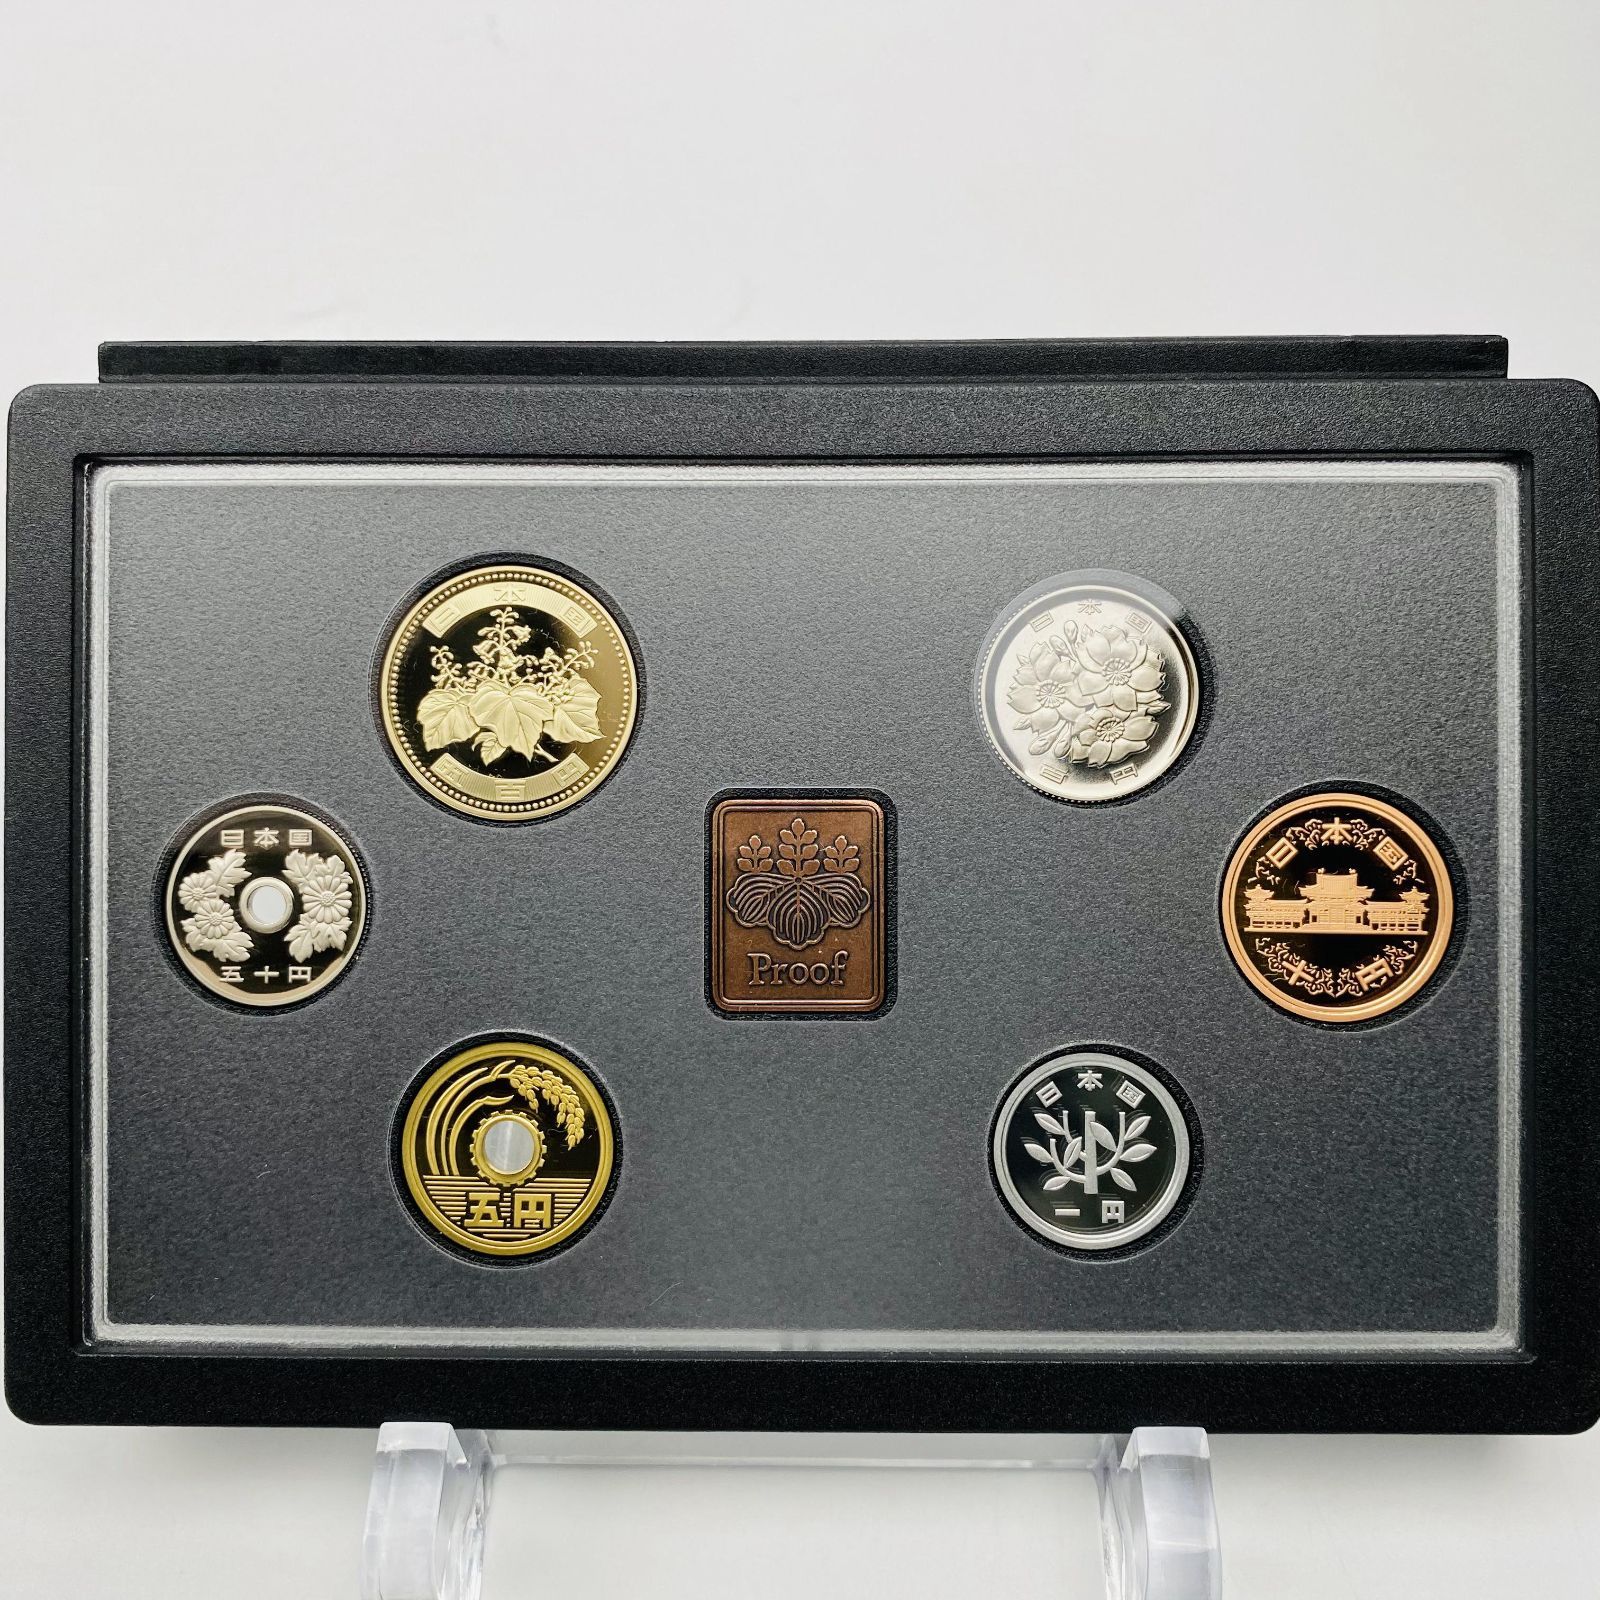 プルーフ貨幣セット 2018年 平成30年 額面666円 年銘板有 全揃い 通常